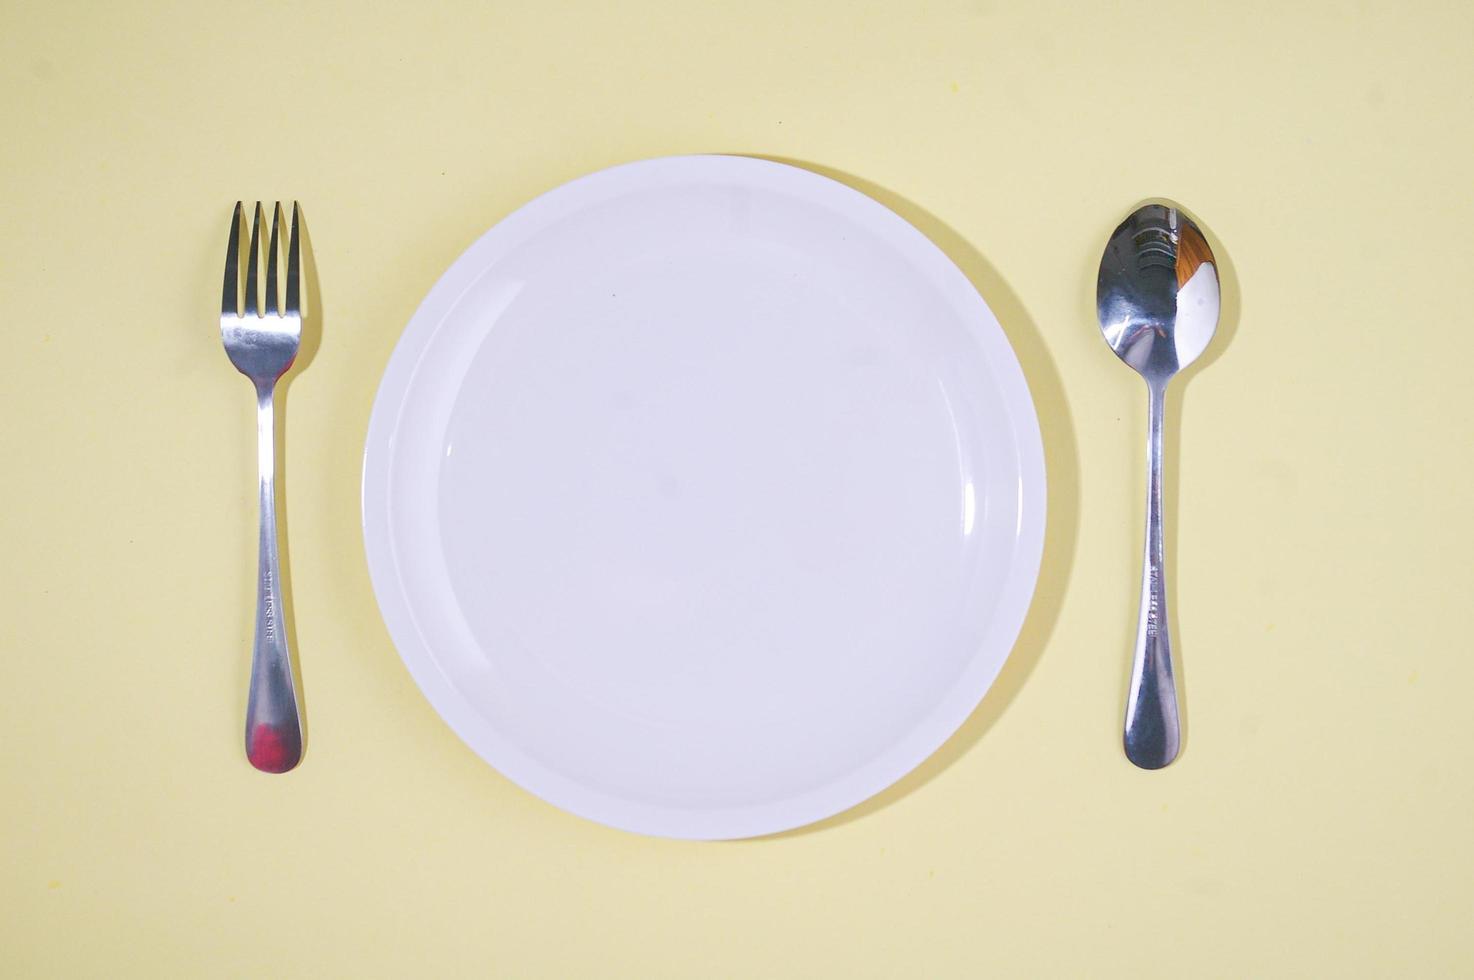 foto de ramadhan cuntdown, plato vacío con cucharas